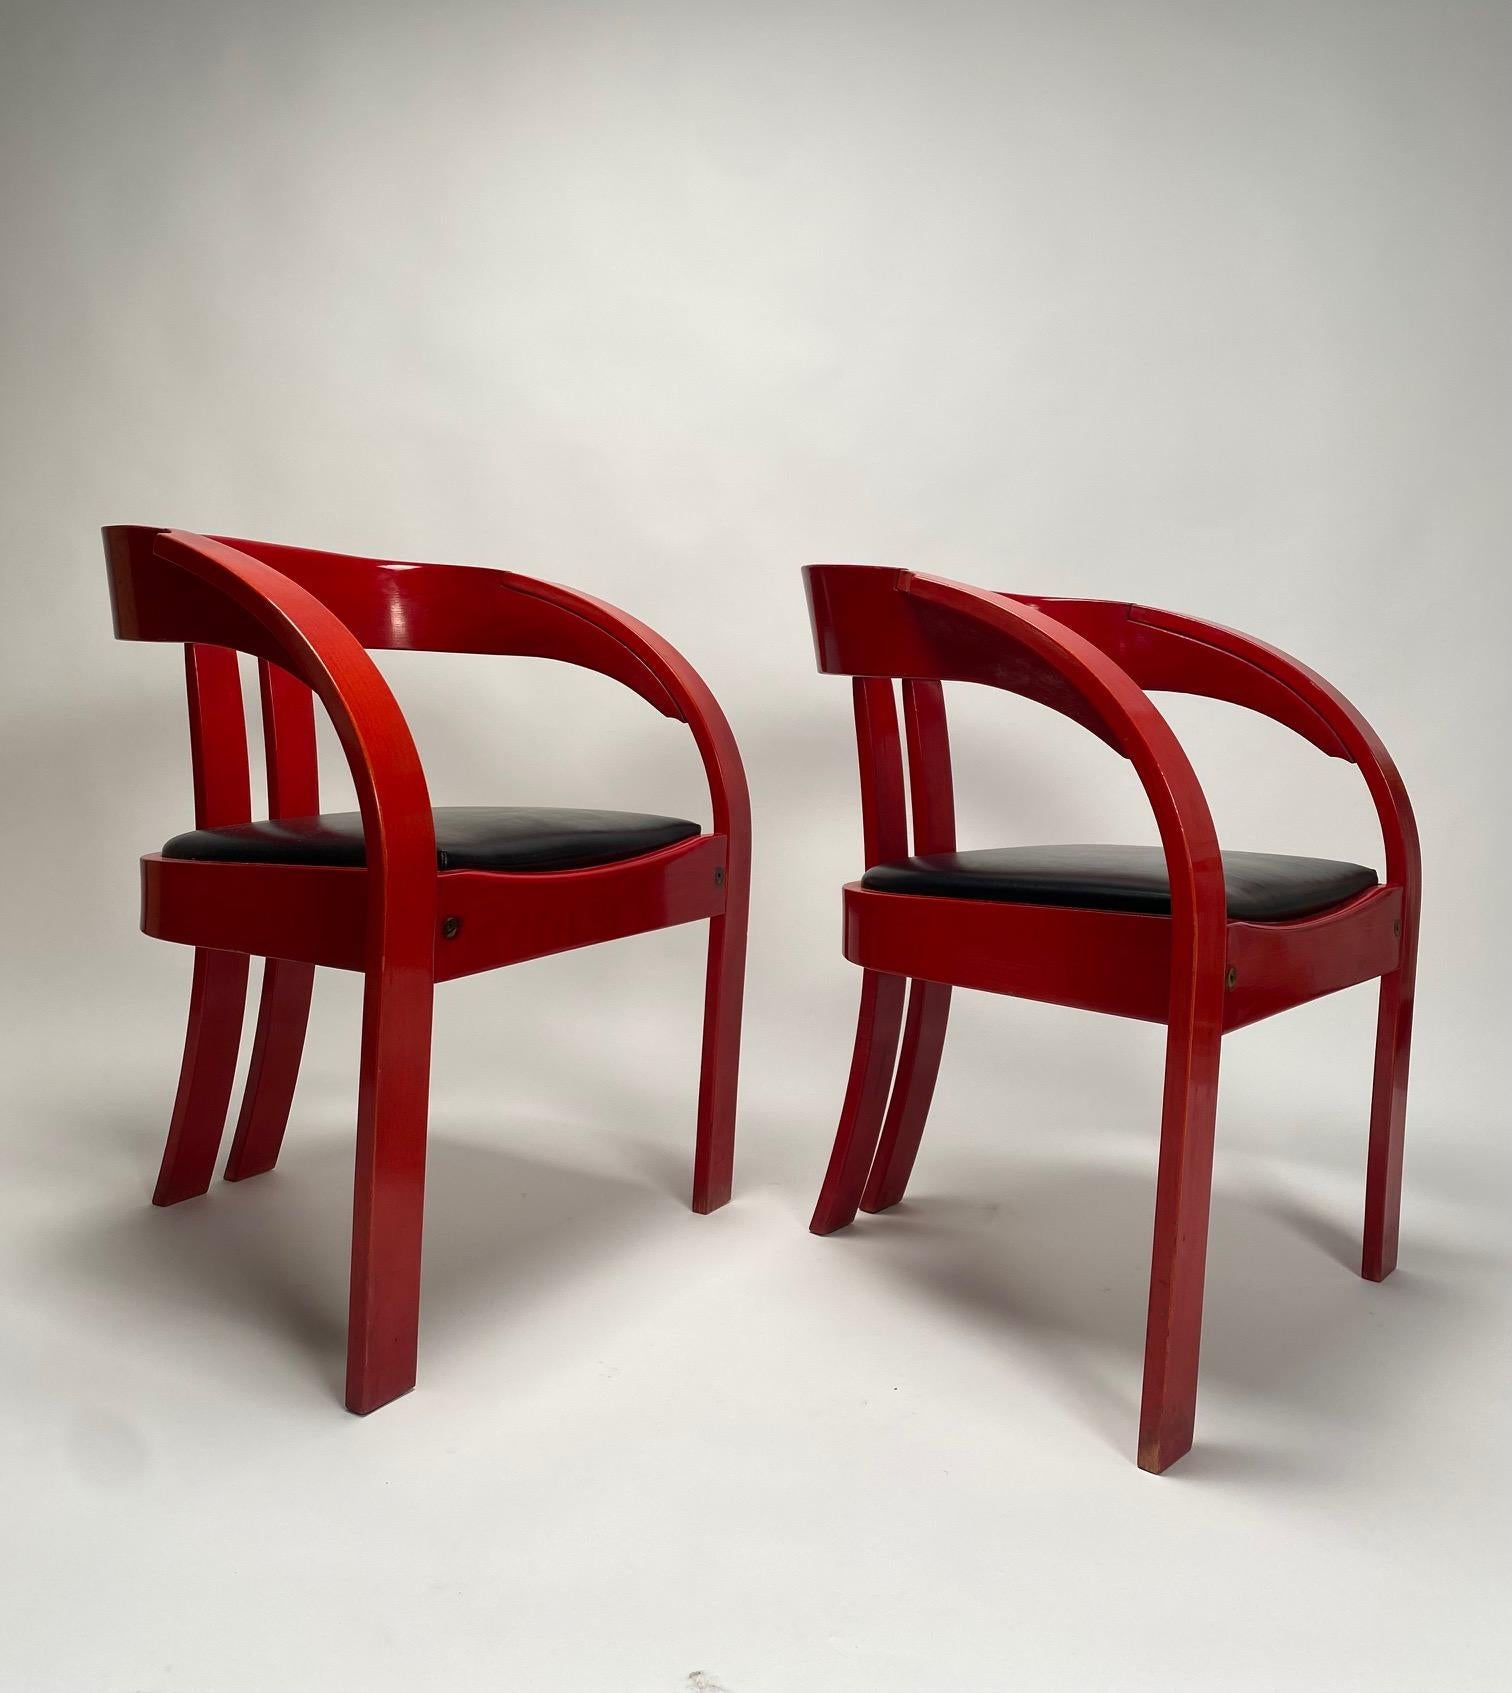 Satz von sechs Sesseln von Giovanni Battista Bassi, lackiertes Holz, Leder Italien 1960er Jahre.

 Ein fröhlicher, geschwungener, rot lackierter Holzsessel mit schwarzer Lederpolsterung. Entworfen von dem Architekten und Designer Giovanni Battista